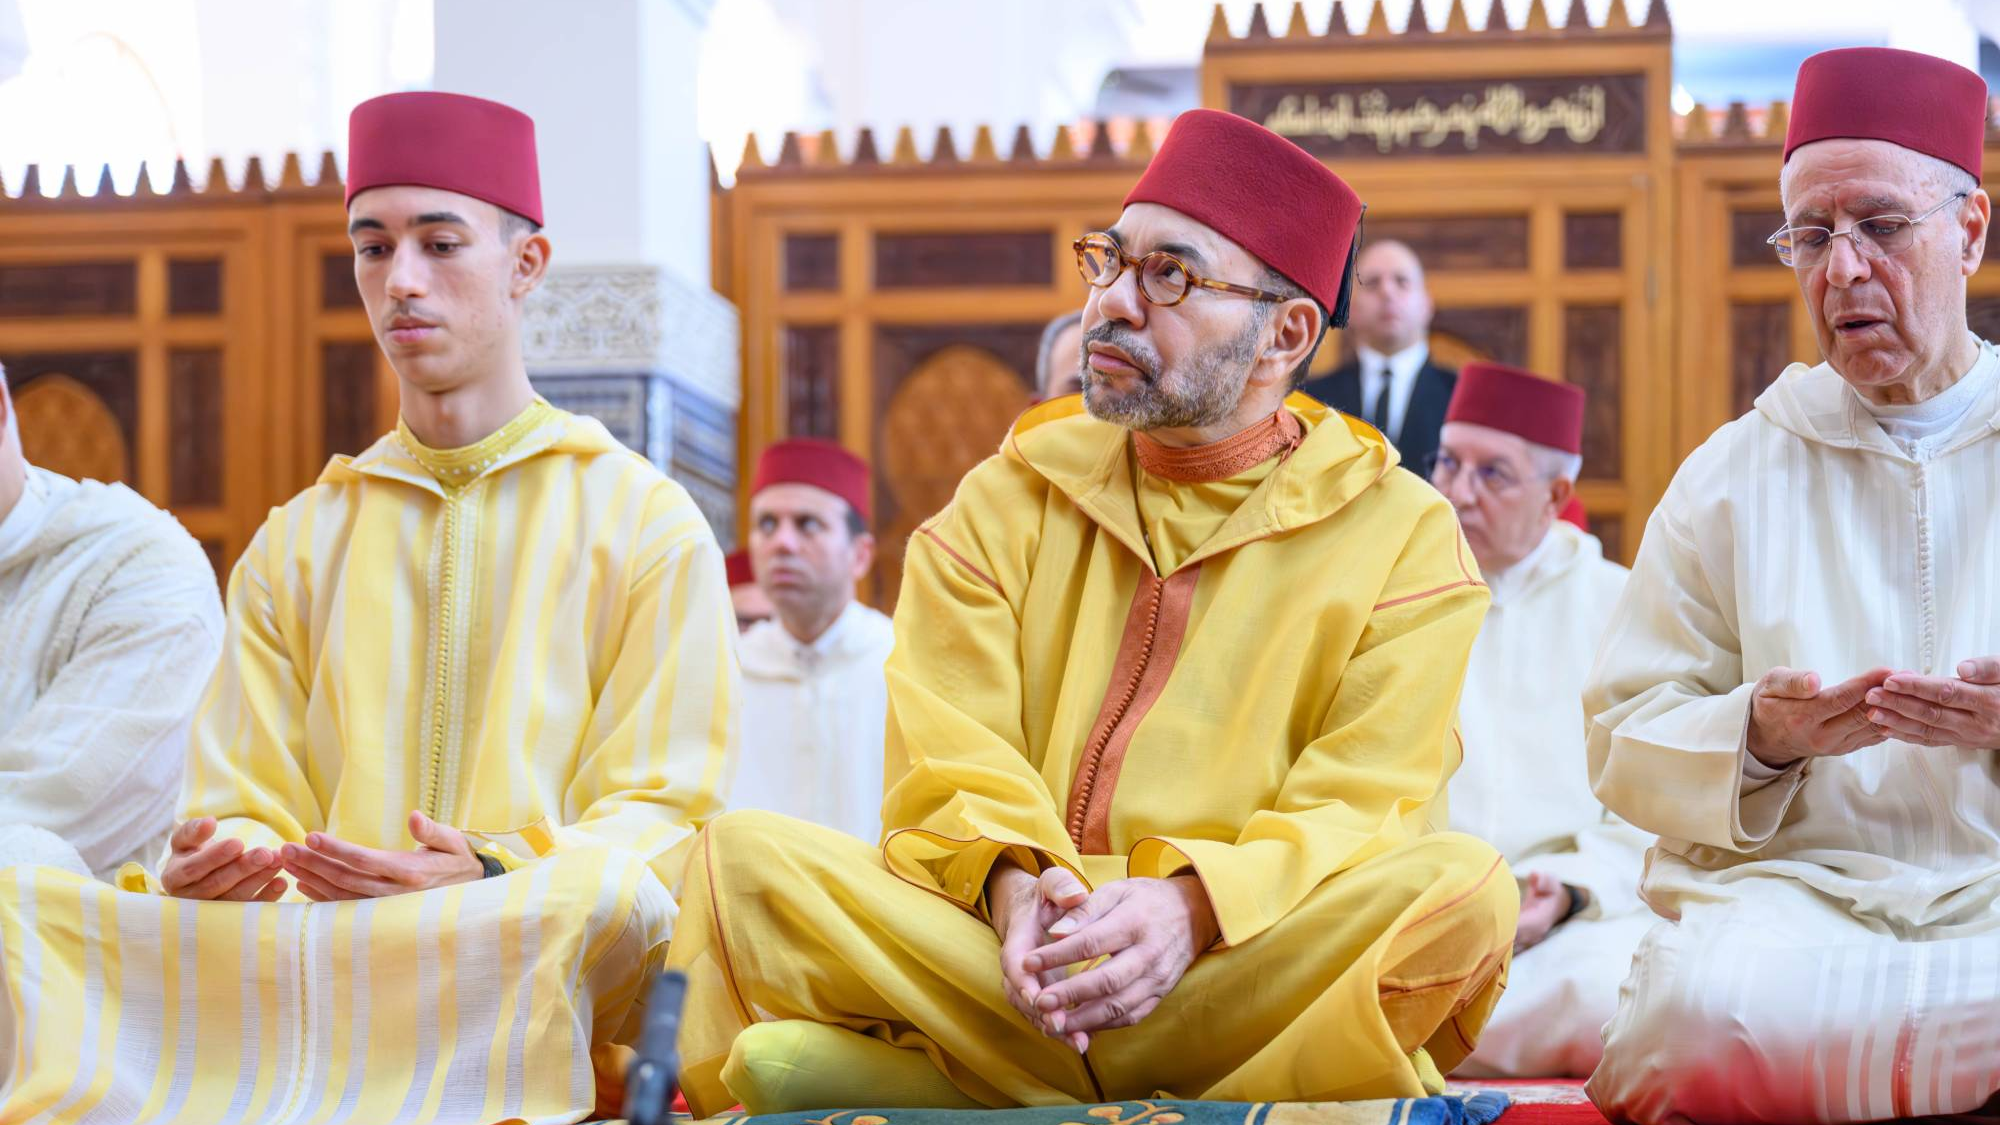 SM le Roi accomplit la prière du vendredi à la mosquée "le Prince Héritier Moulay El Hassan" à Salé